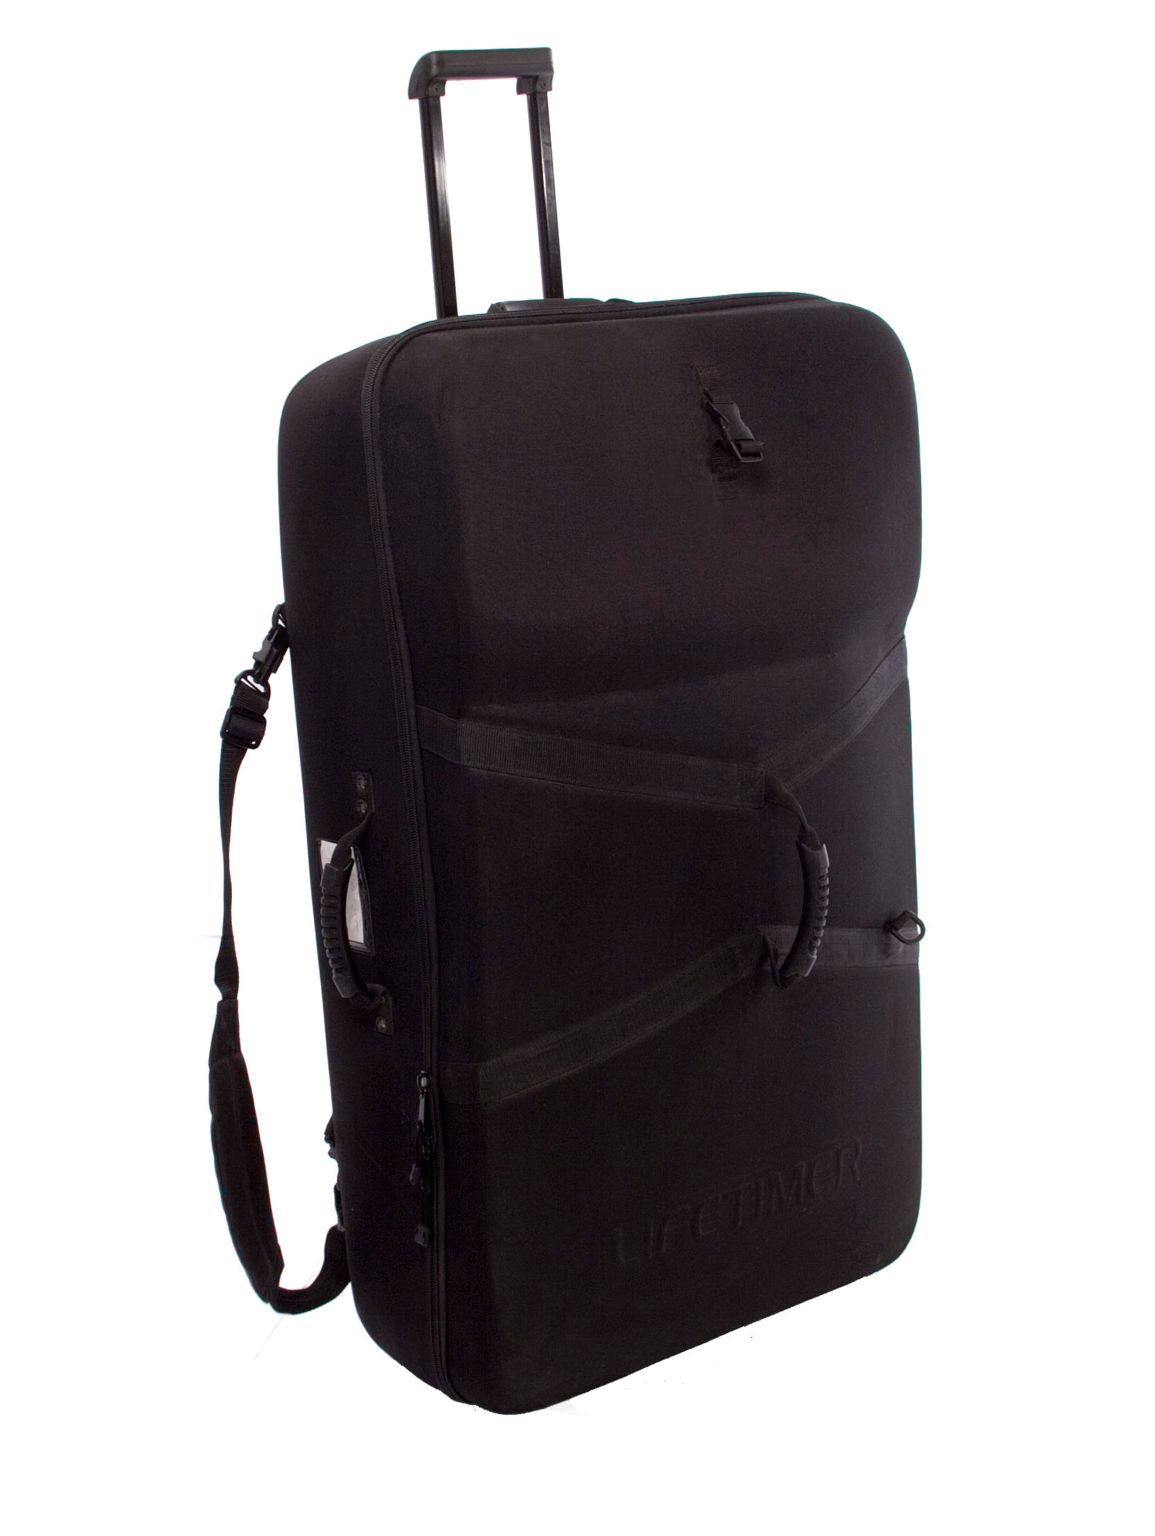 Black Lifetimer International lightweight travel case for portable Travel-Lite table luggage bag / case / medical bag w/ shoulder strap